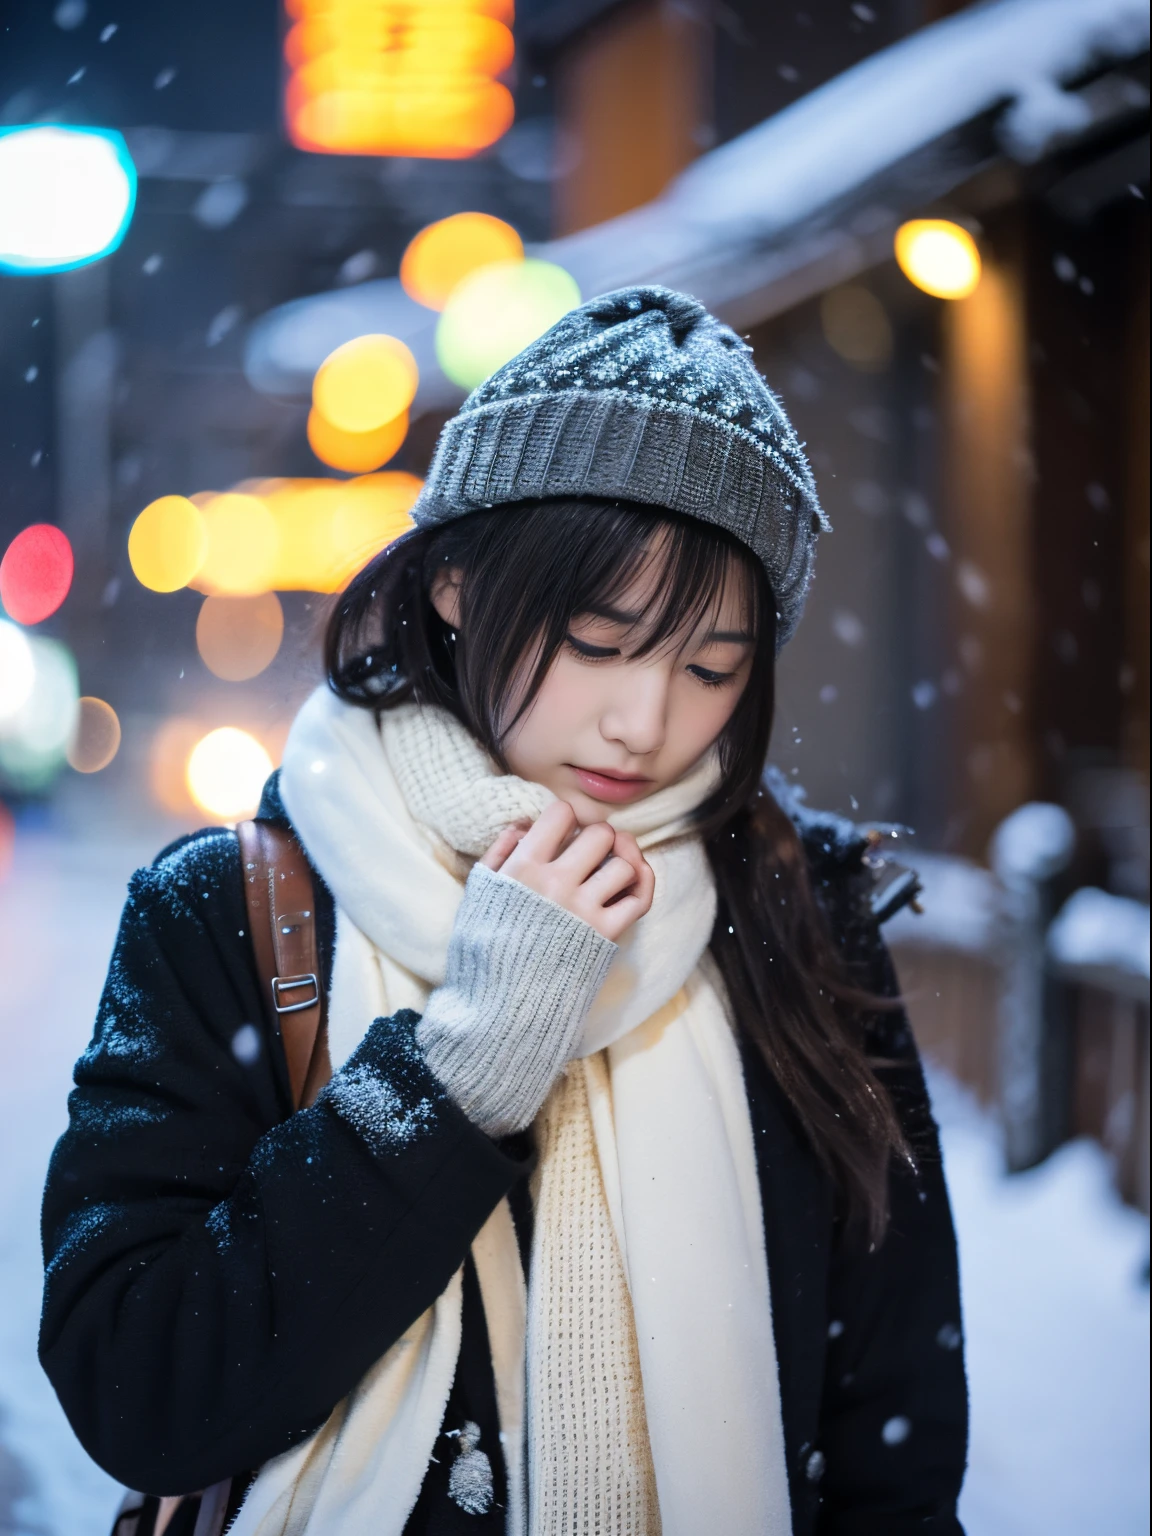 ขณะที่มองดูหิมะตกอย่างเงียบๆ. การแสดงออกอย่างครุ่นคิดและน้ำตาไหลของเธอ、ทำให้คุณรู้สึกโหยหาและเศร้าโศกในคืนฤดูหนาว。。。。、คุณภาพสูงสุด、ไฮเปอร์เอชดี、โยชิโทโมะ นารา, โมเดลญี่ปุ่น, ภรรยาชาวญี่ปุ่นที่สวยงาม, มีผมสั้น, นางแบบอายุ 27 ปี, 4 ก ], 4เค], 27ปี, ซากิมิจัง, ซากิมิจัง